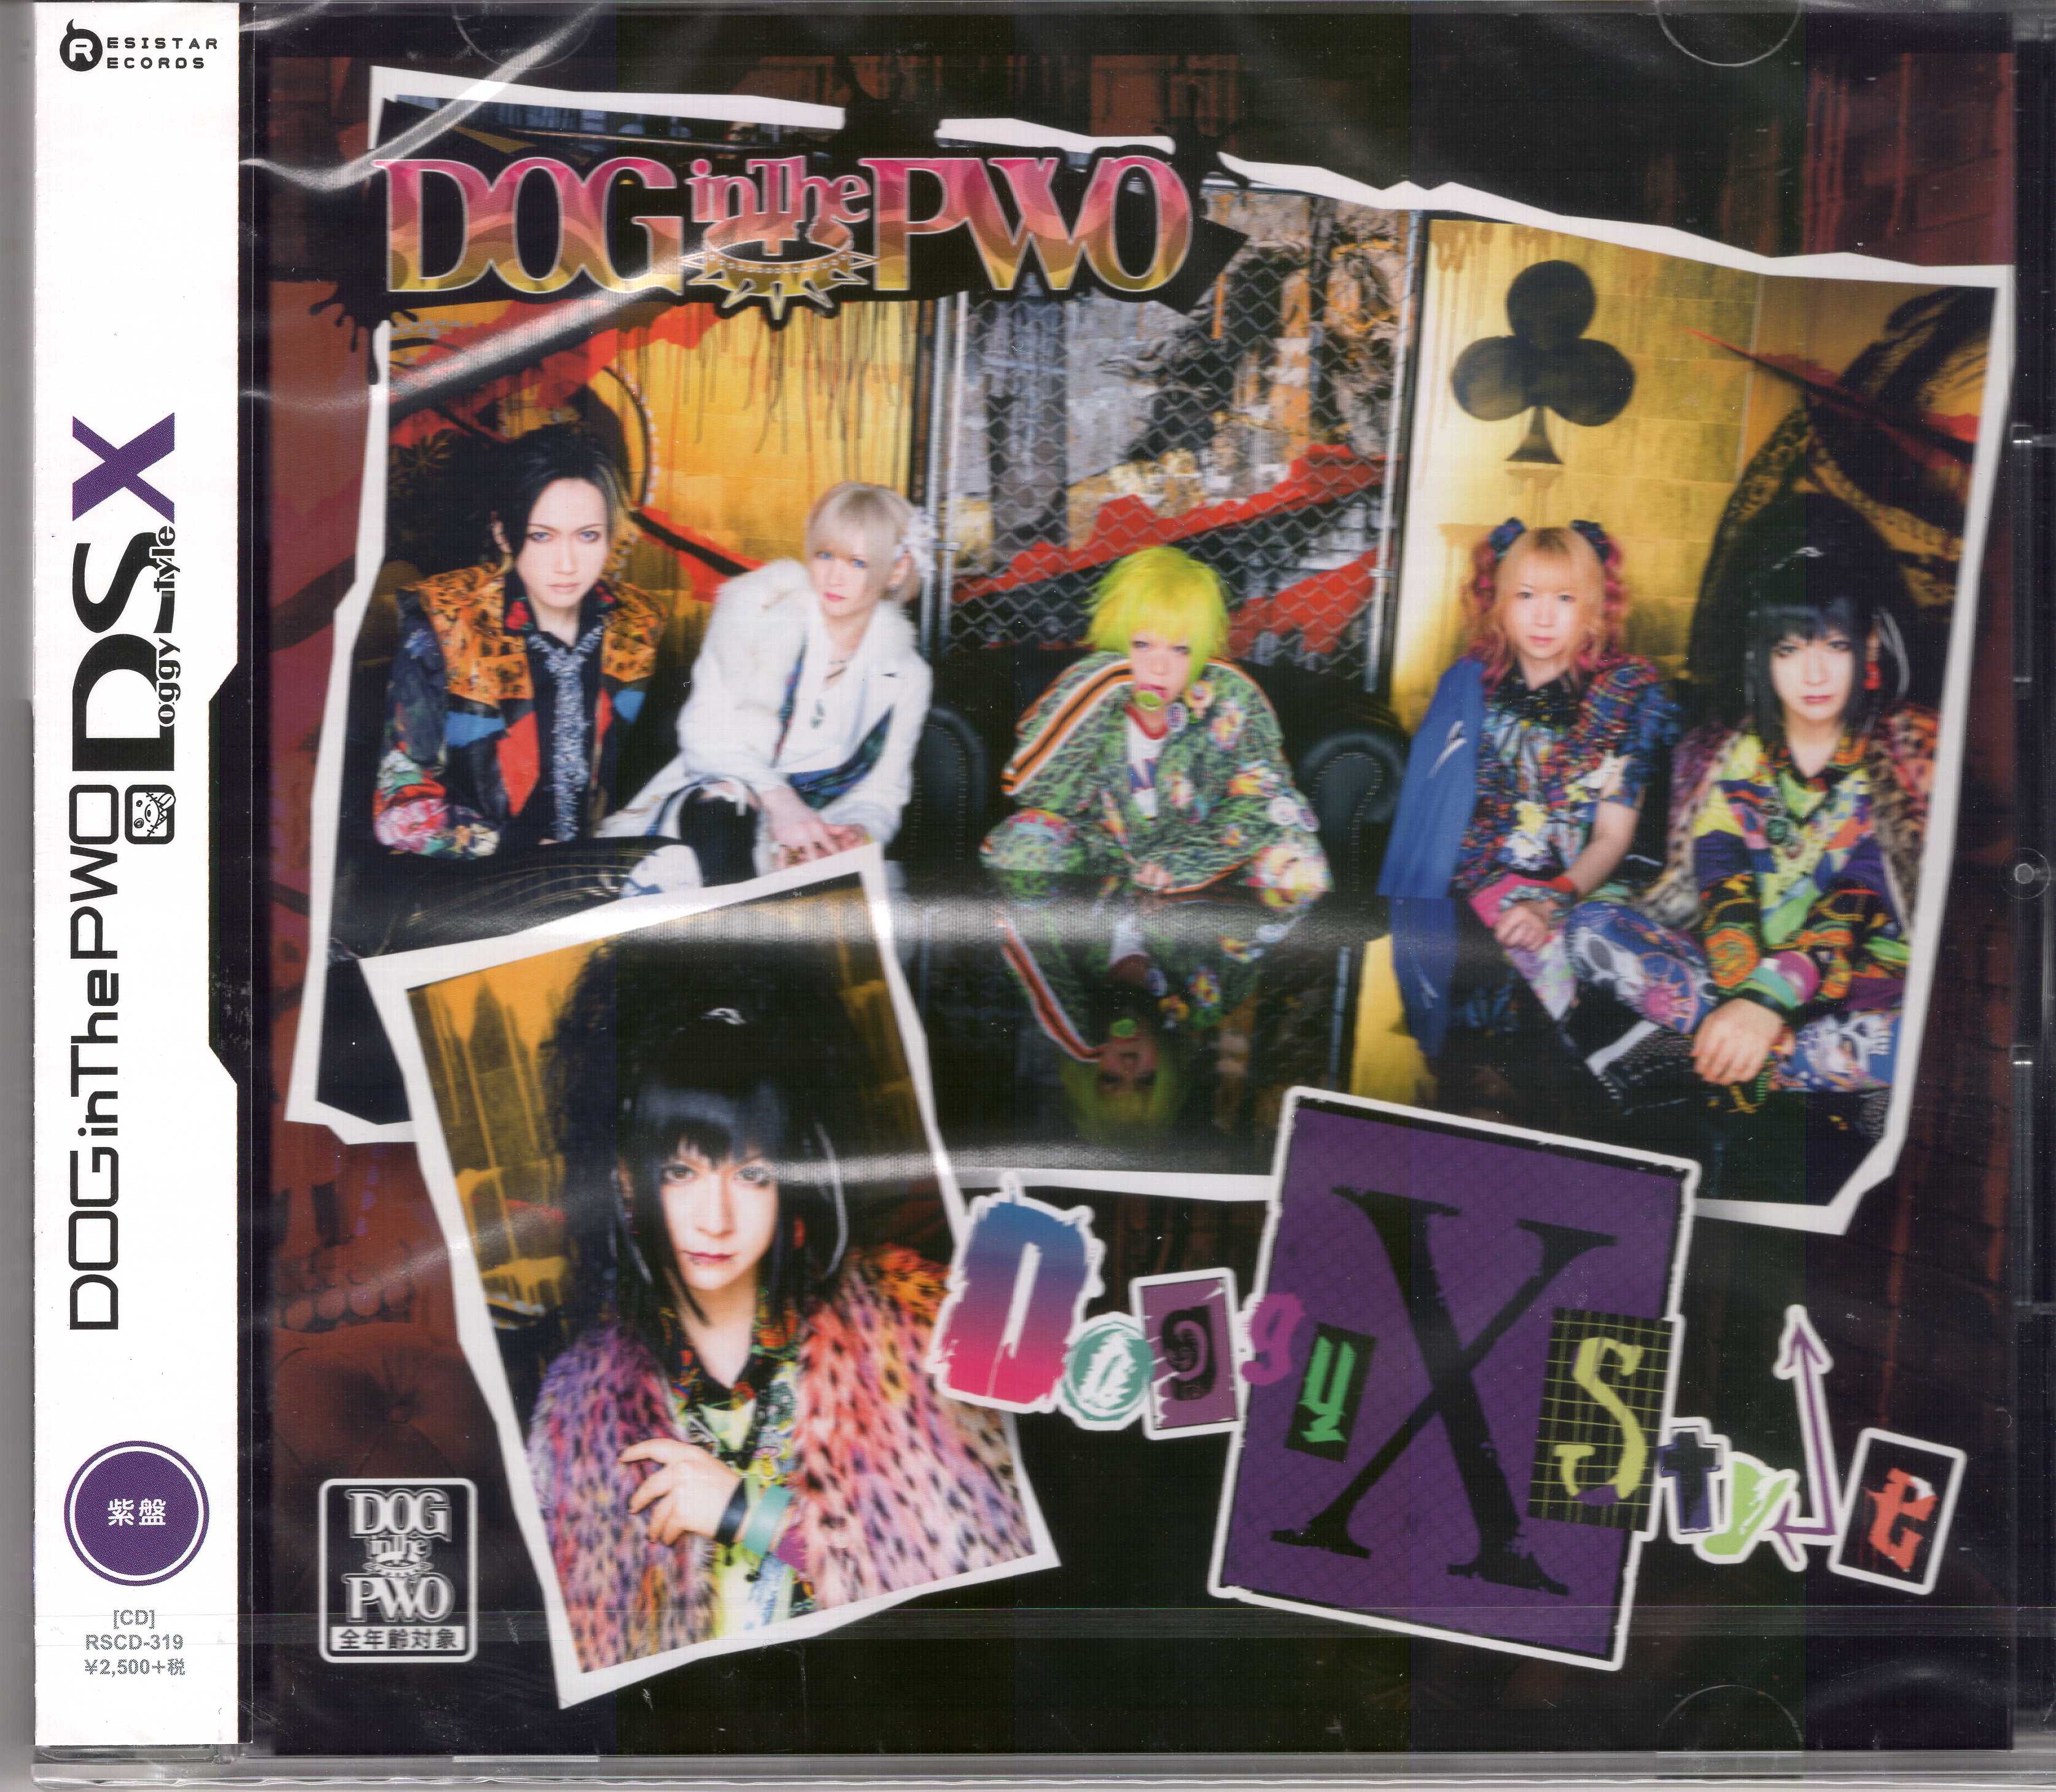 ドッグインザパラレルワールドオーケストラ の CD 【紫盤】Doggy StyleX